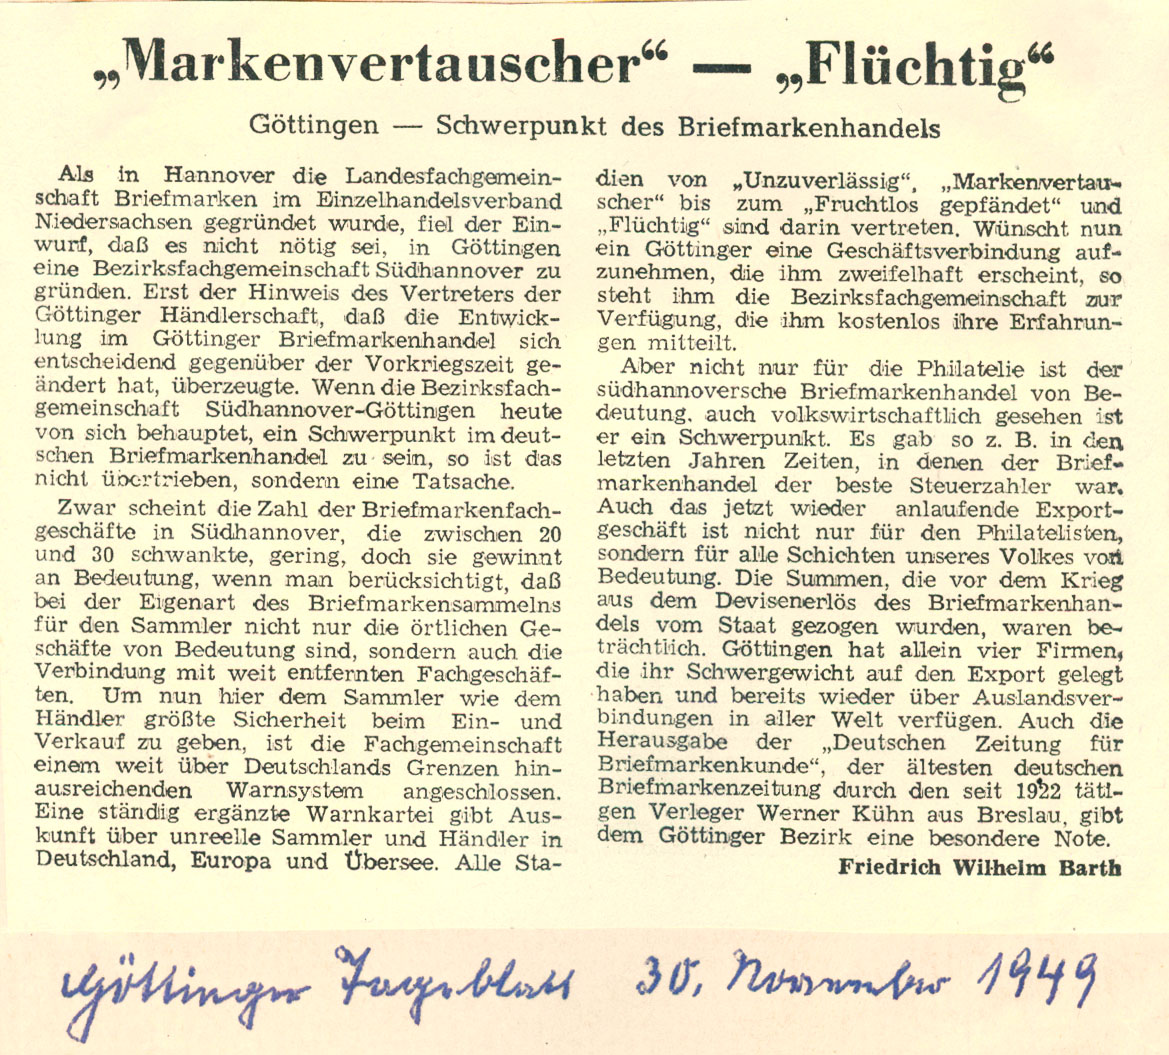 1949 Markenvertauscher